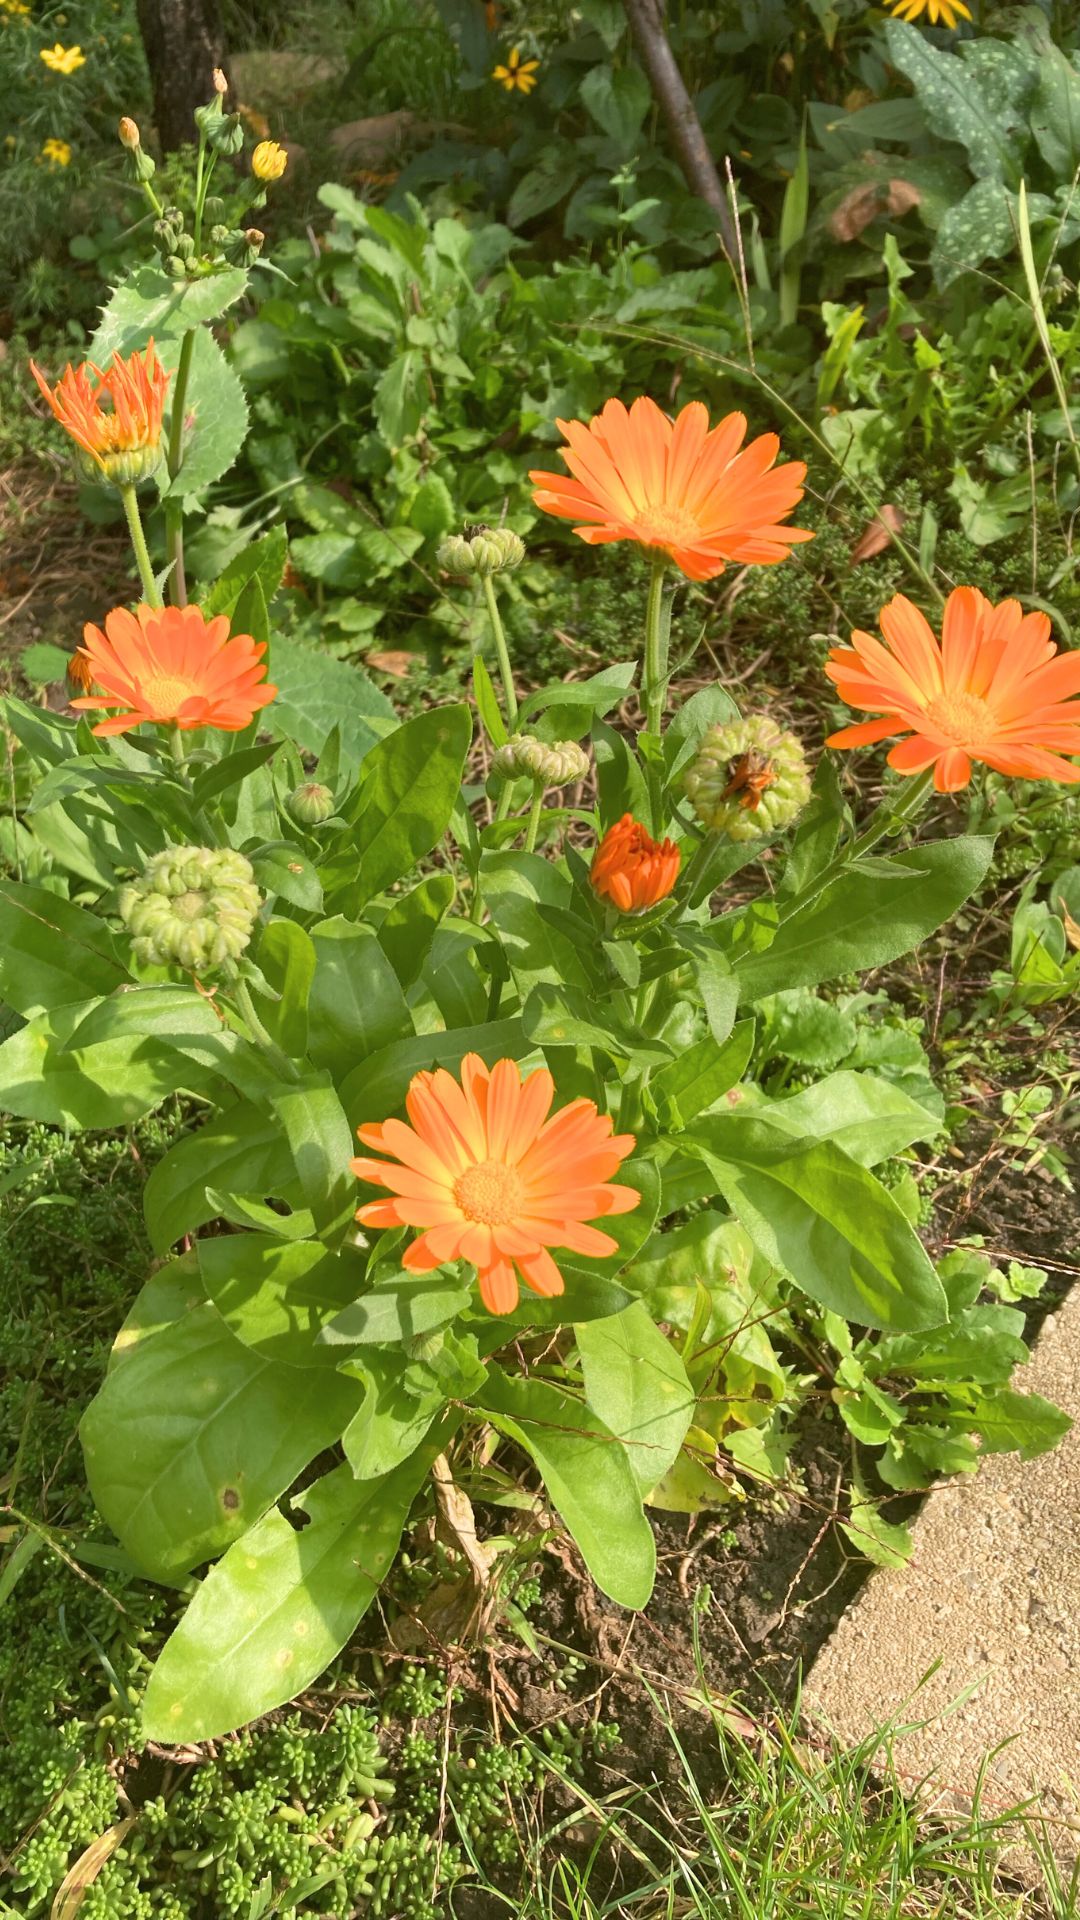 Die Ringelblume, ein sonniger Gartenliebling, bietet farbenfrohe Blüten und vielfältige Verwendungsmöglichkeiten in Küche, Gesundheit und Pflege.